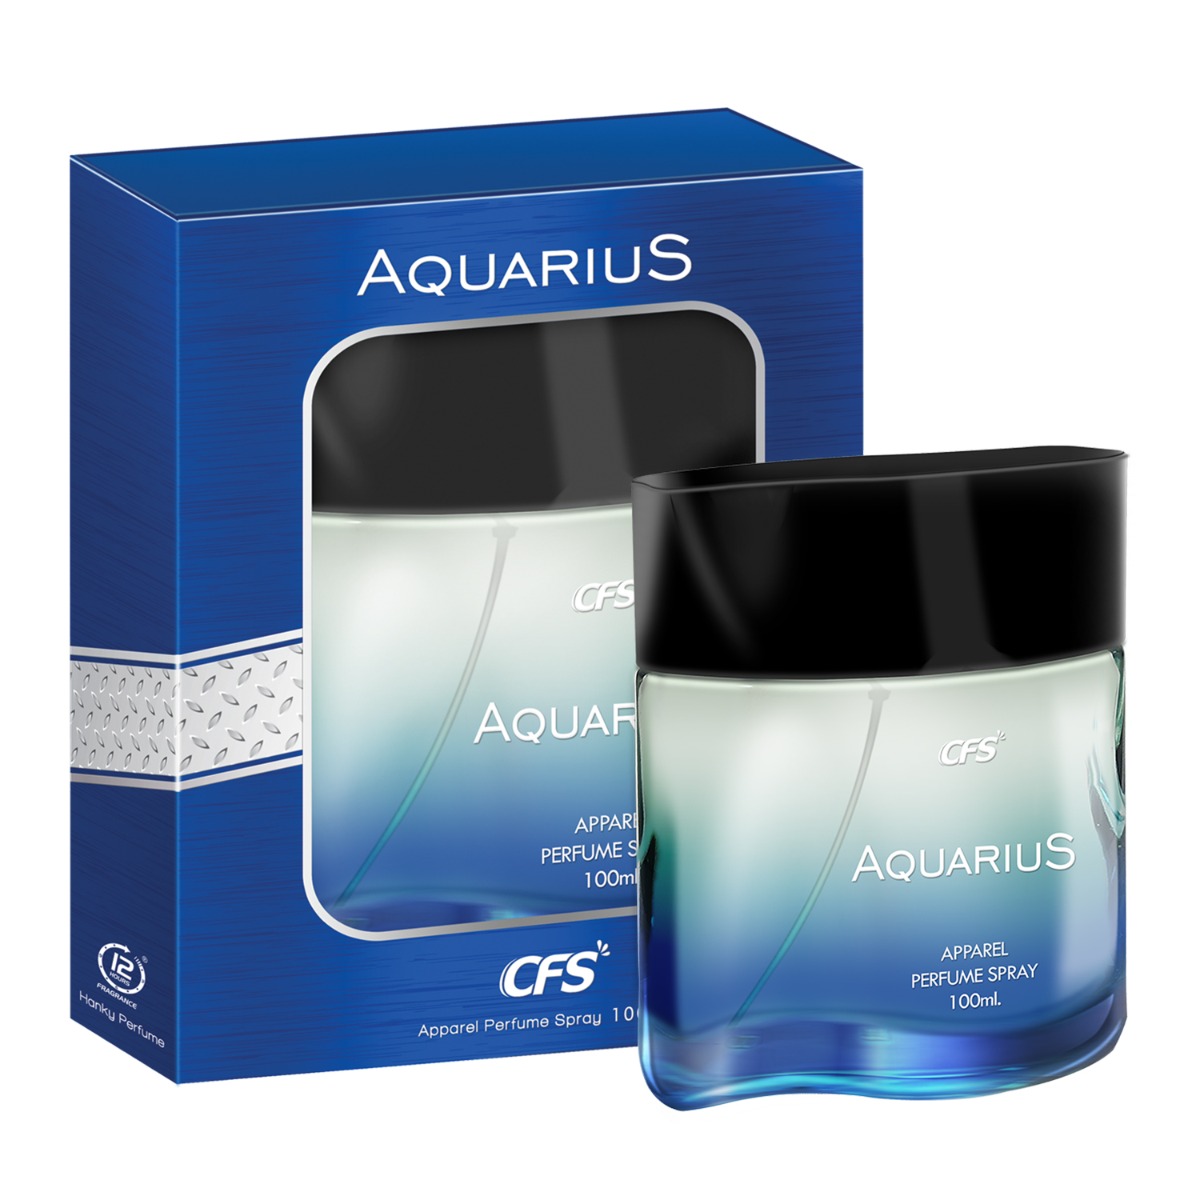 CFS Aquarius Long Lasting Apparel Perfume Spray, 100ml